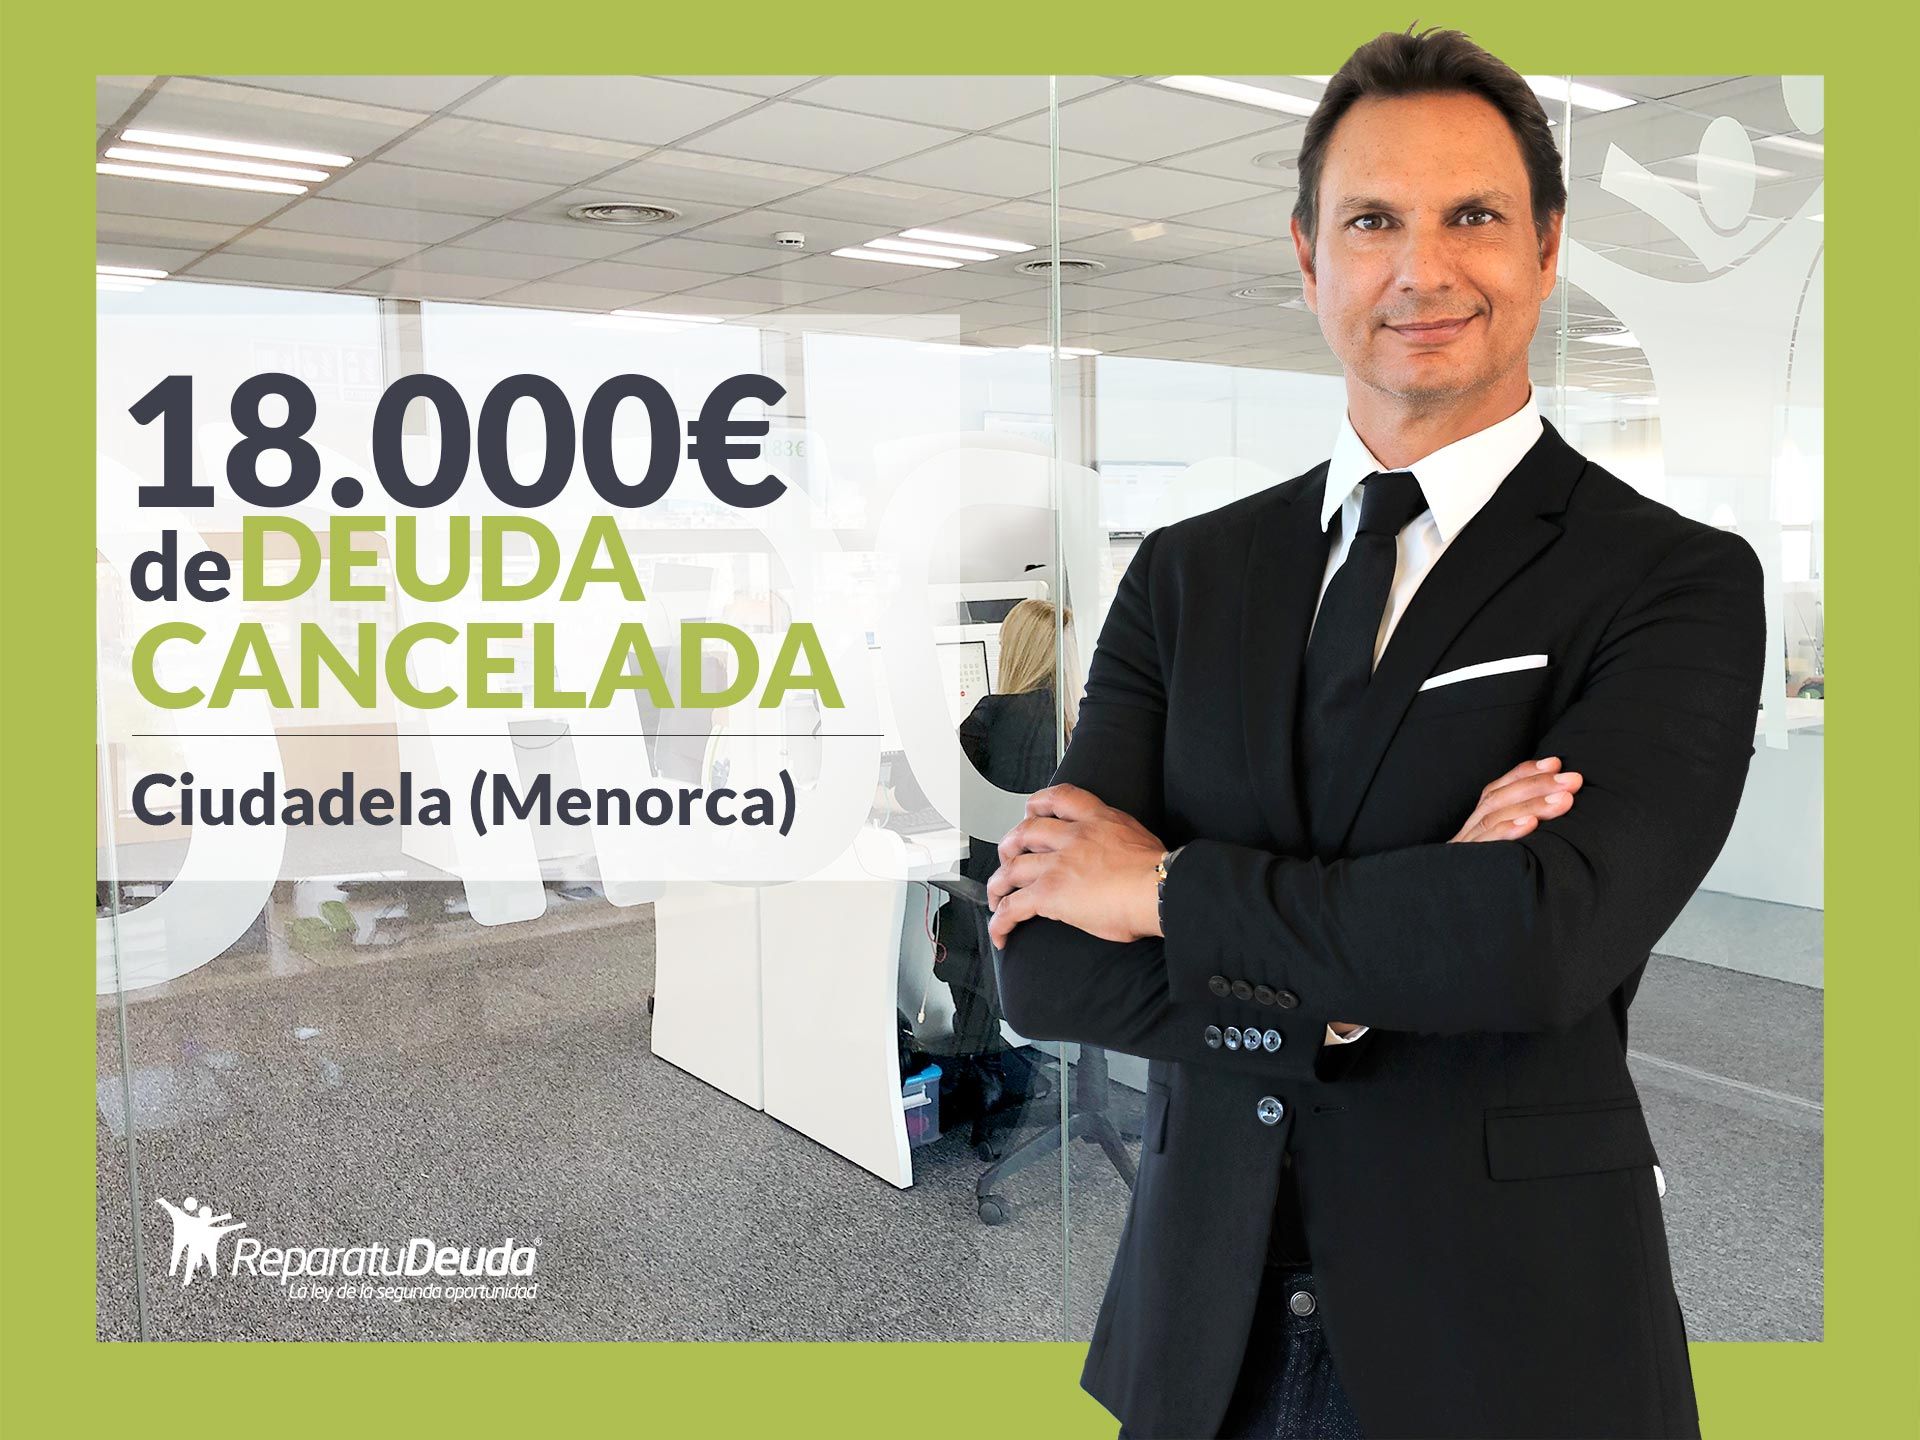 Repara tu Deuda Abogados cancela 18.000? en Ciudadela (Menorca) gracias a la Ley de Segunda Oportunidad